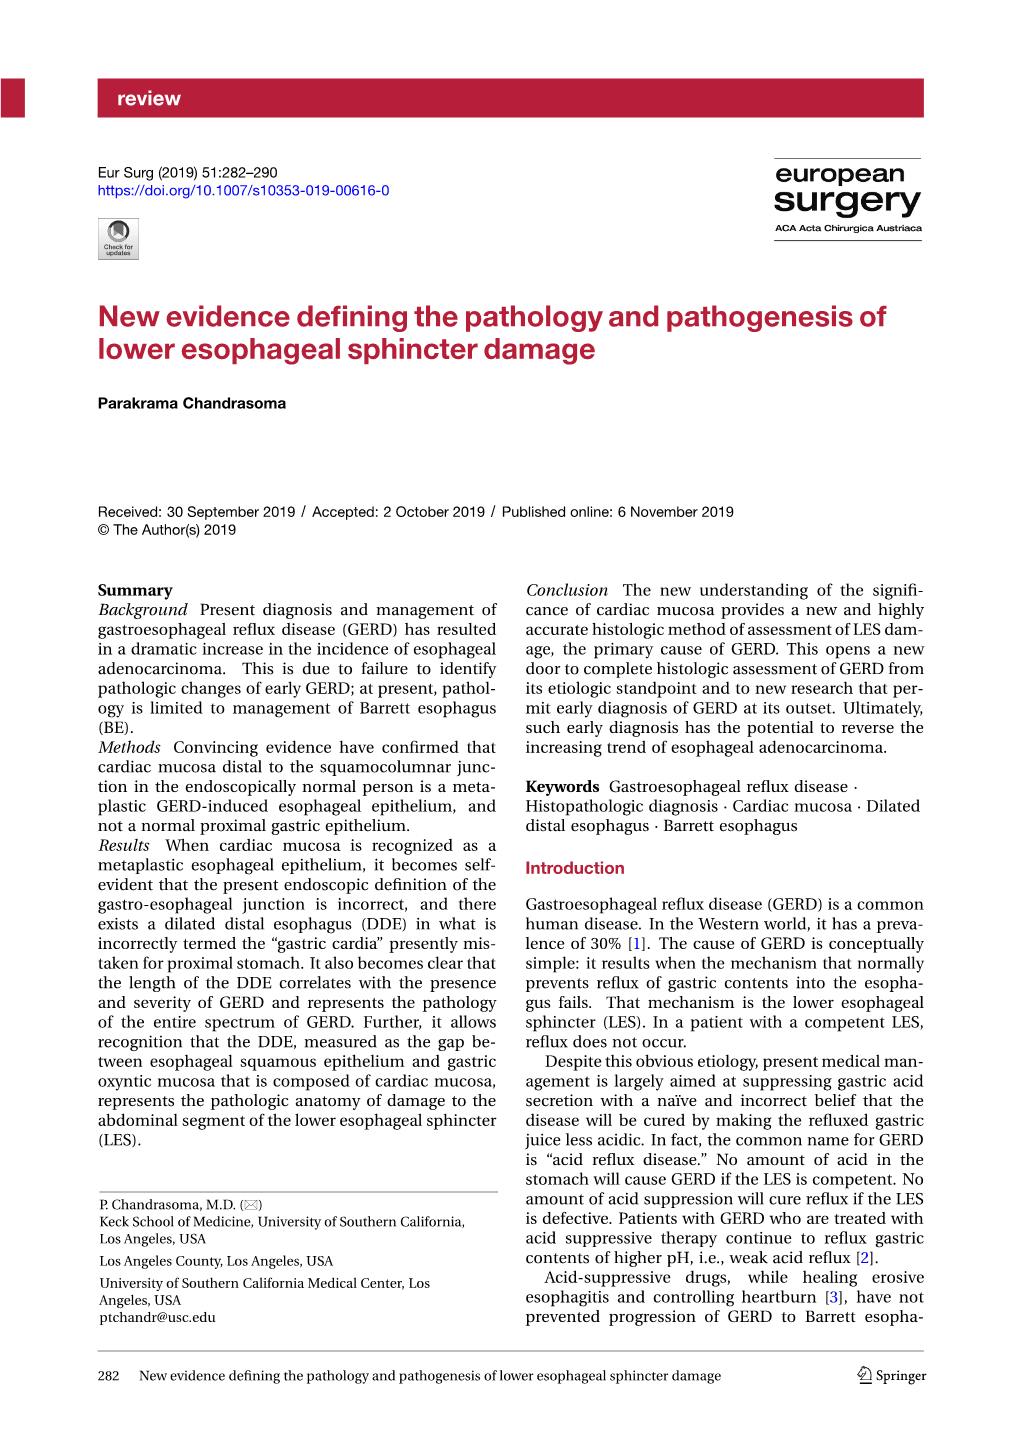 New Evidence Defining the Pathology and Pathogenesis of Lower